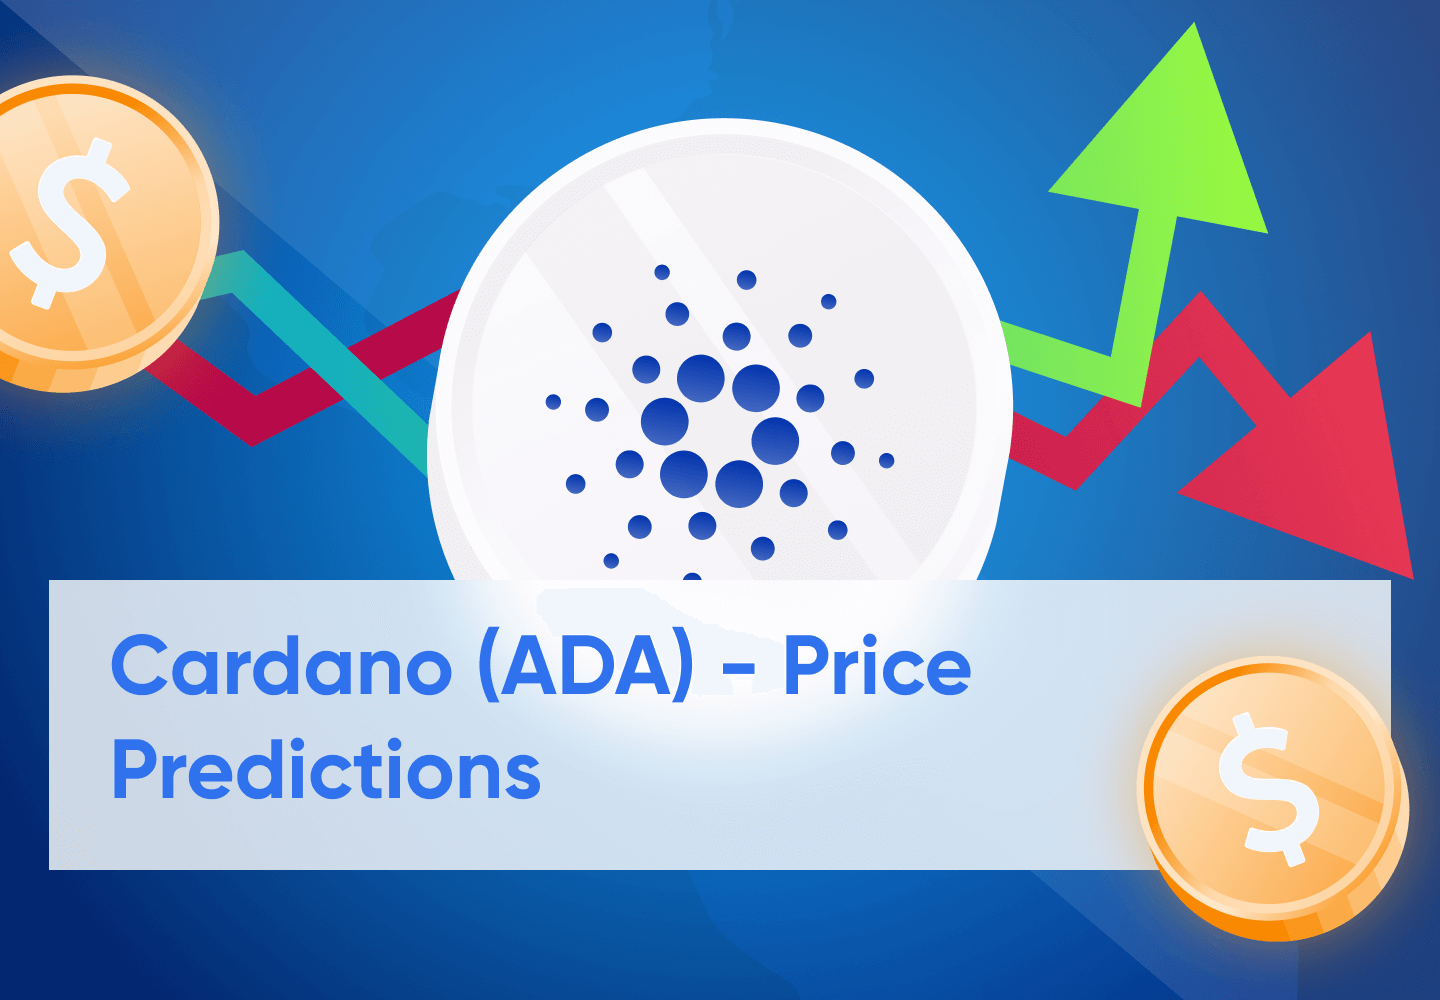 Cardano (ADA) Price Prediction 2023